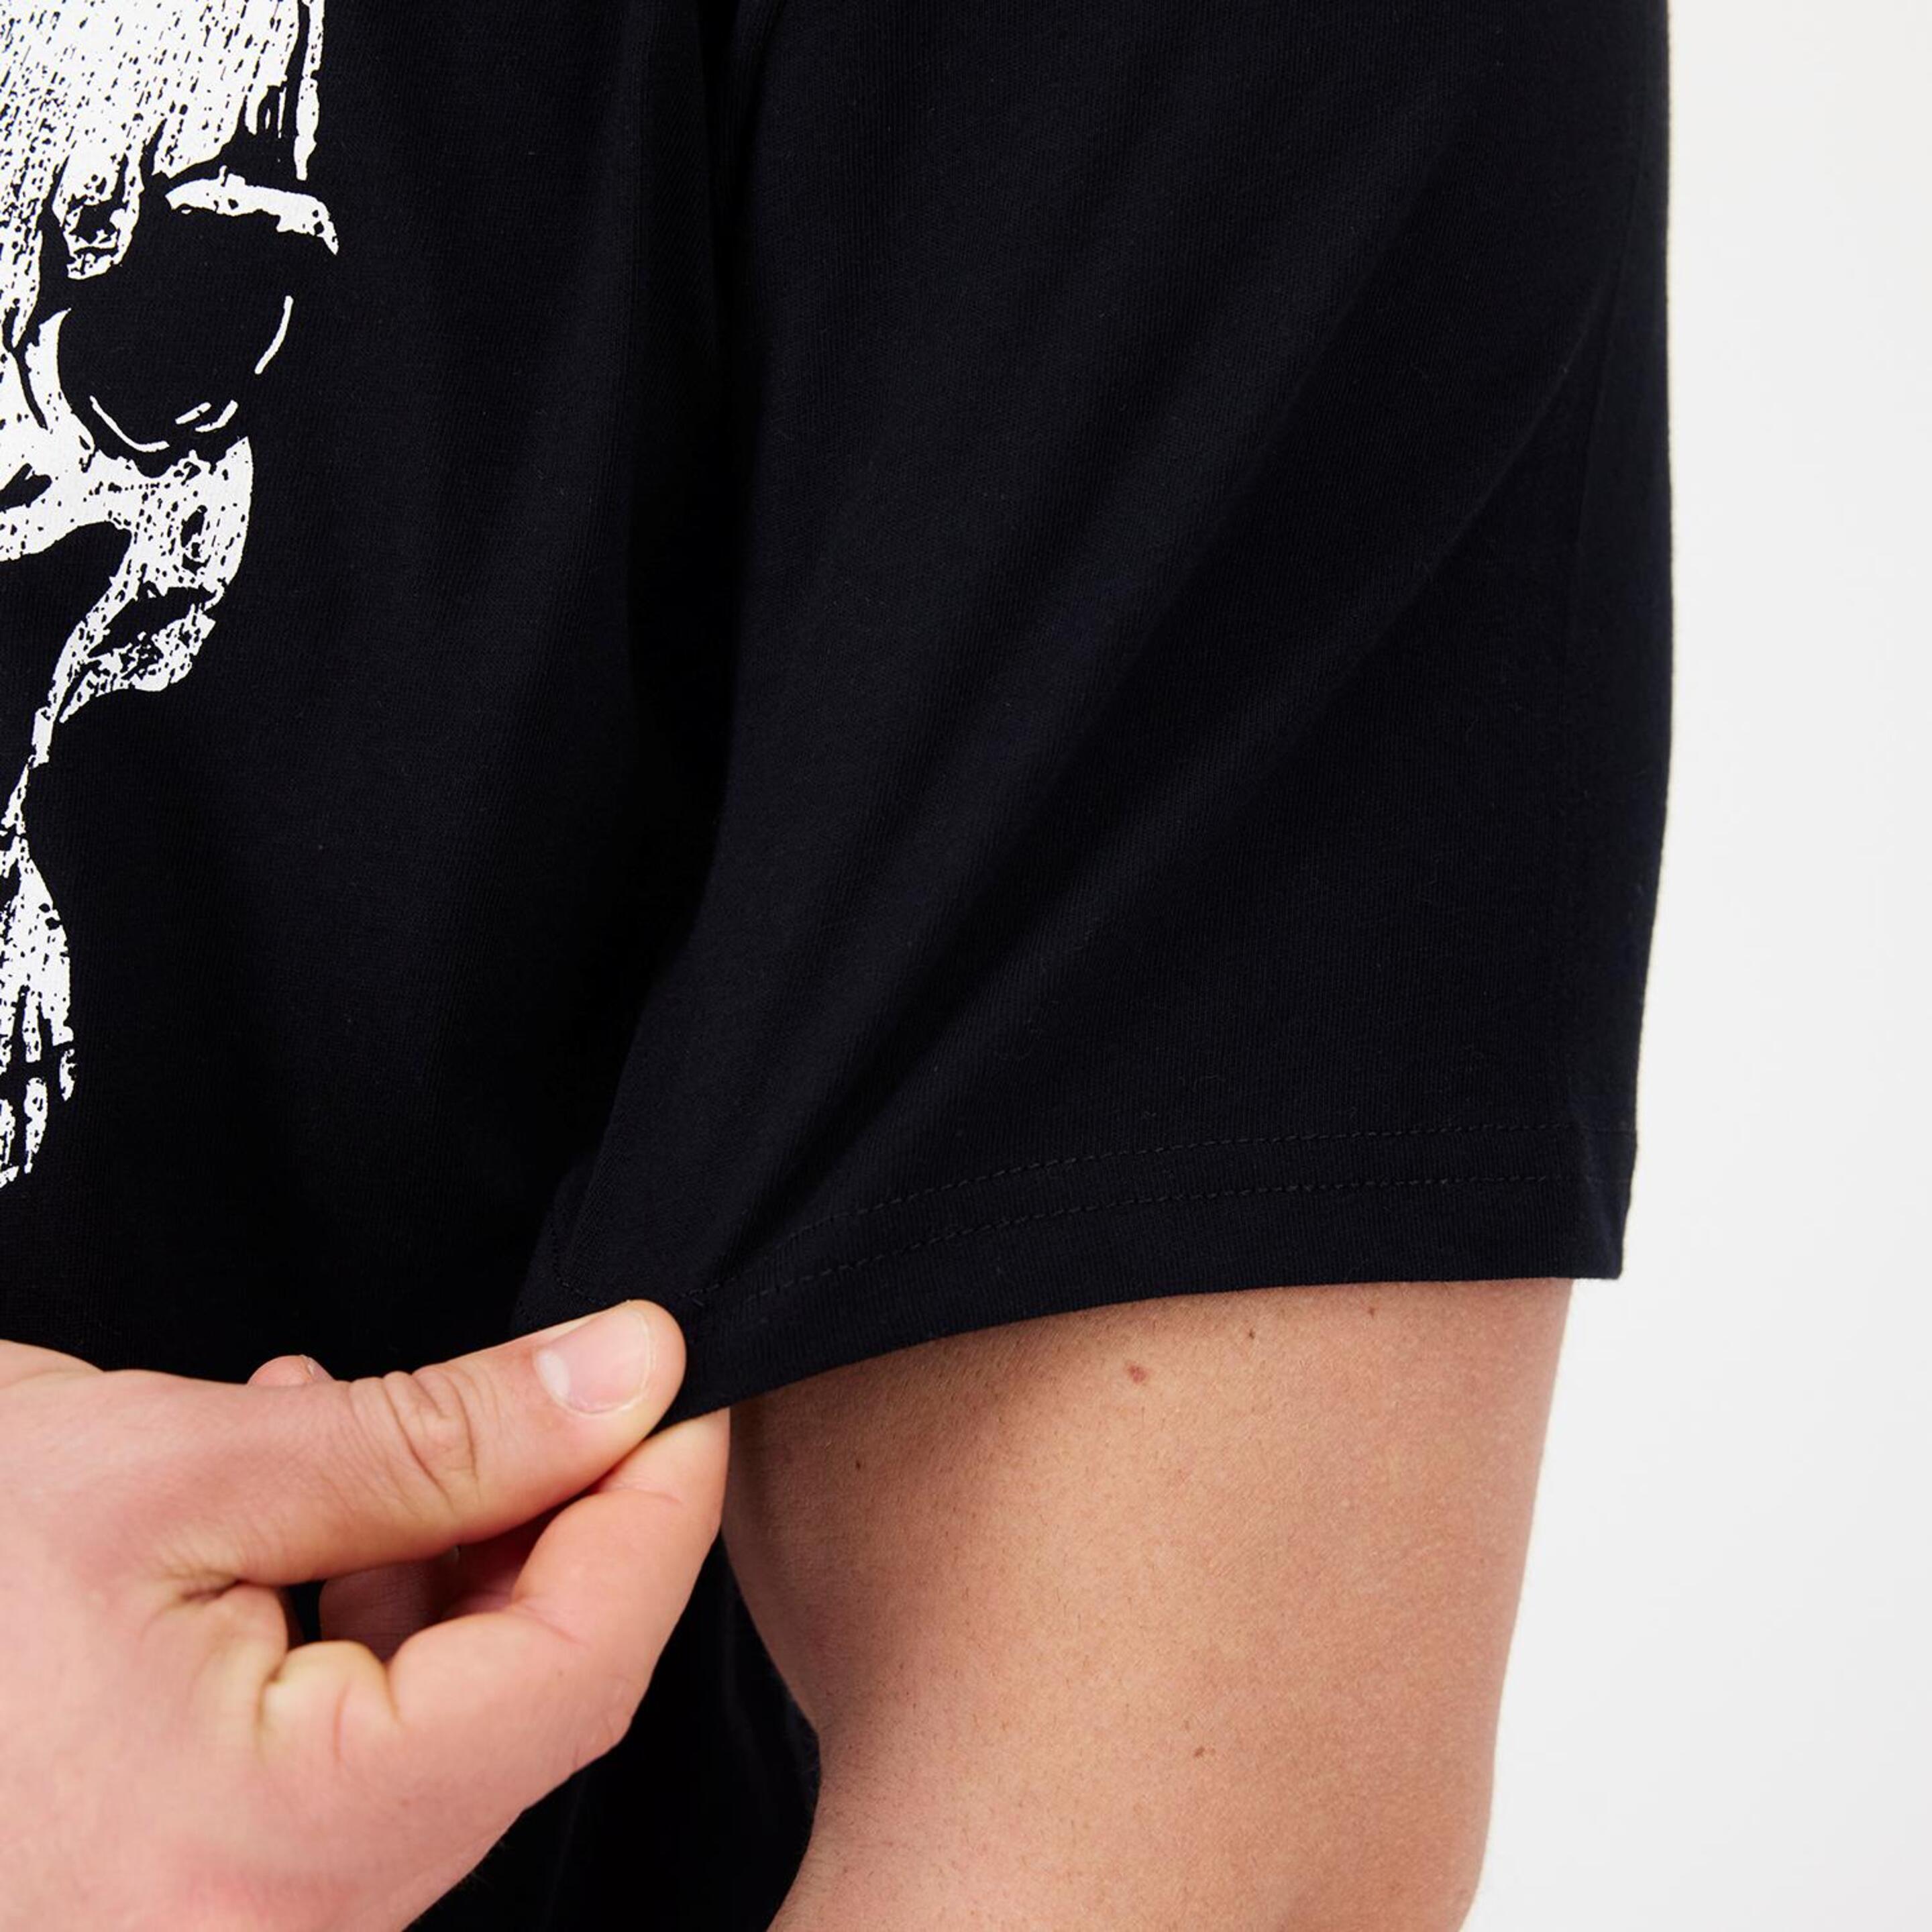 Camiseta Guns N'Roses - Negro - Camiseta Hombre